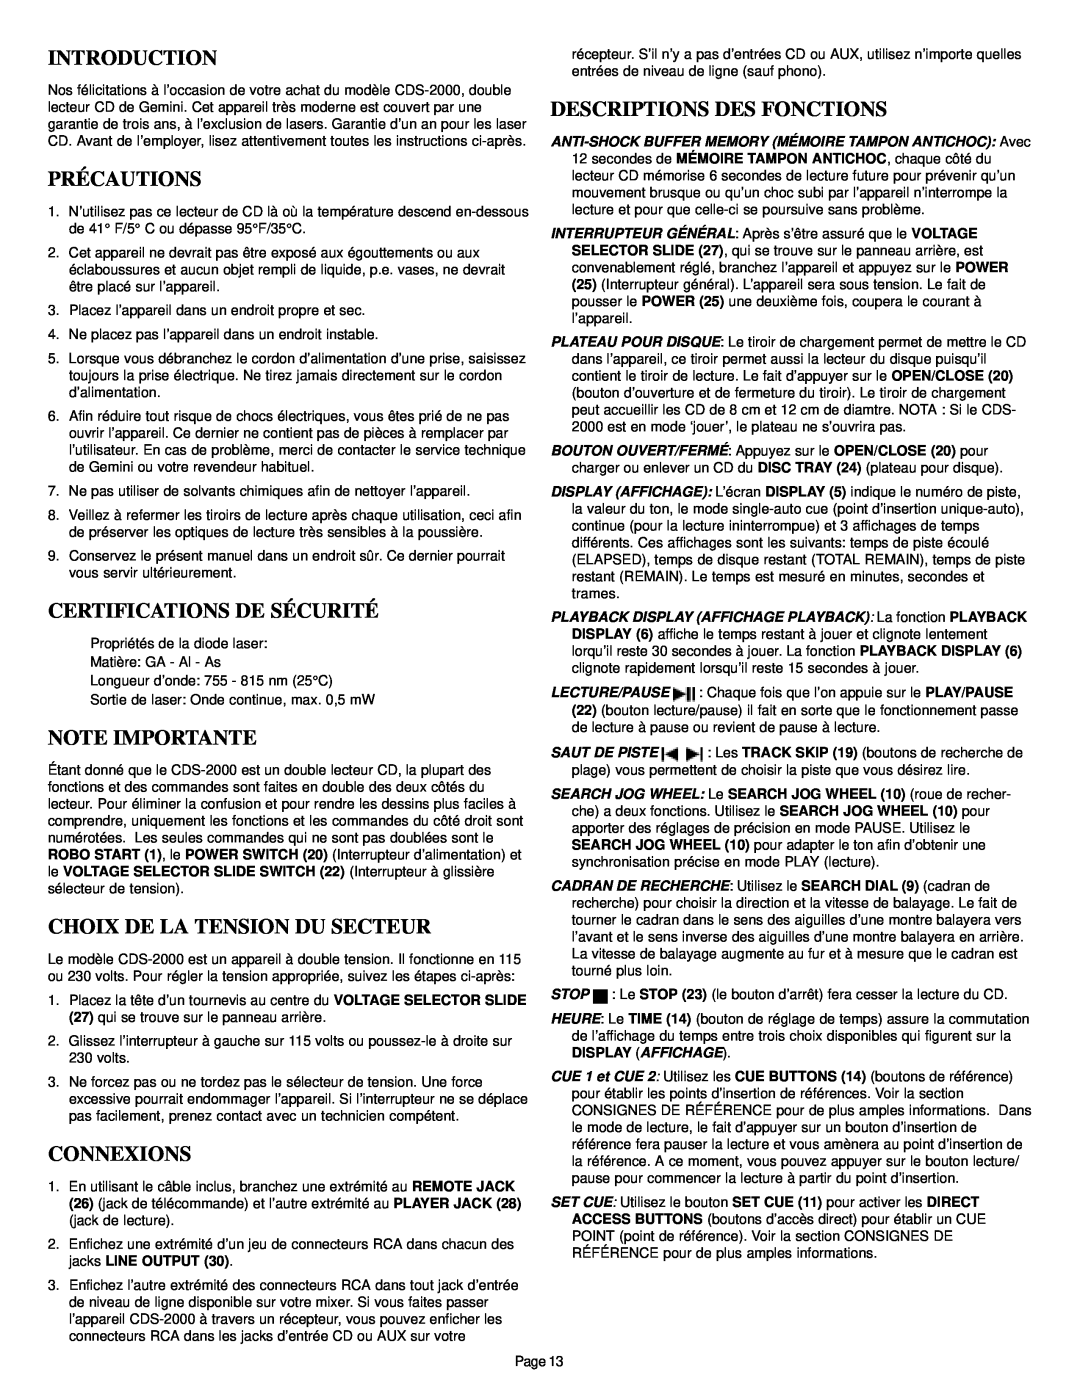 Gemini CDS-2000 manual Précautions, Certifications De Sécurité, Note Importante, Choix De La Tension Du Secteur, Connexions 